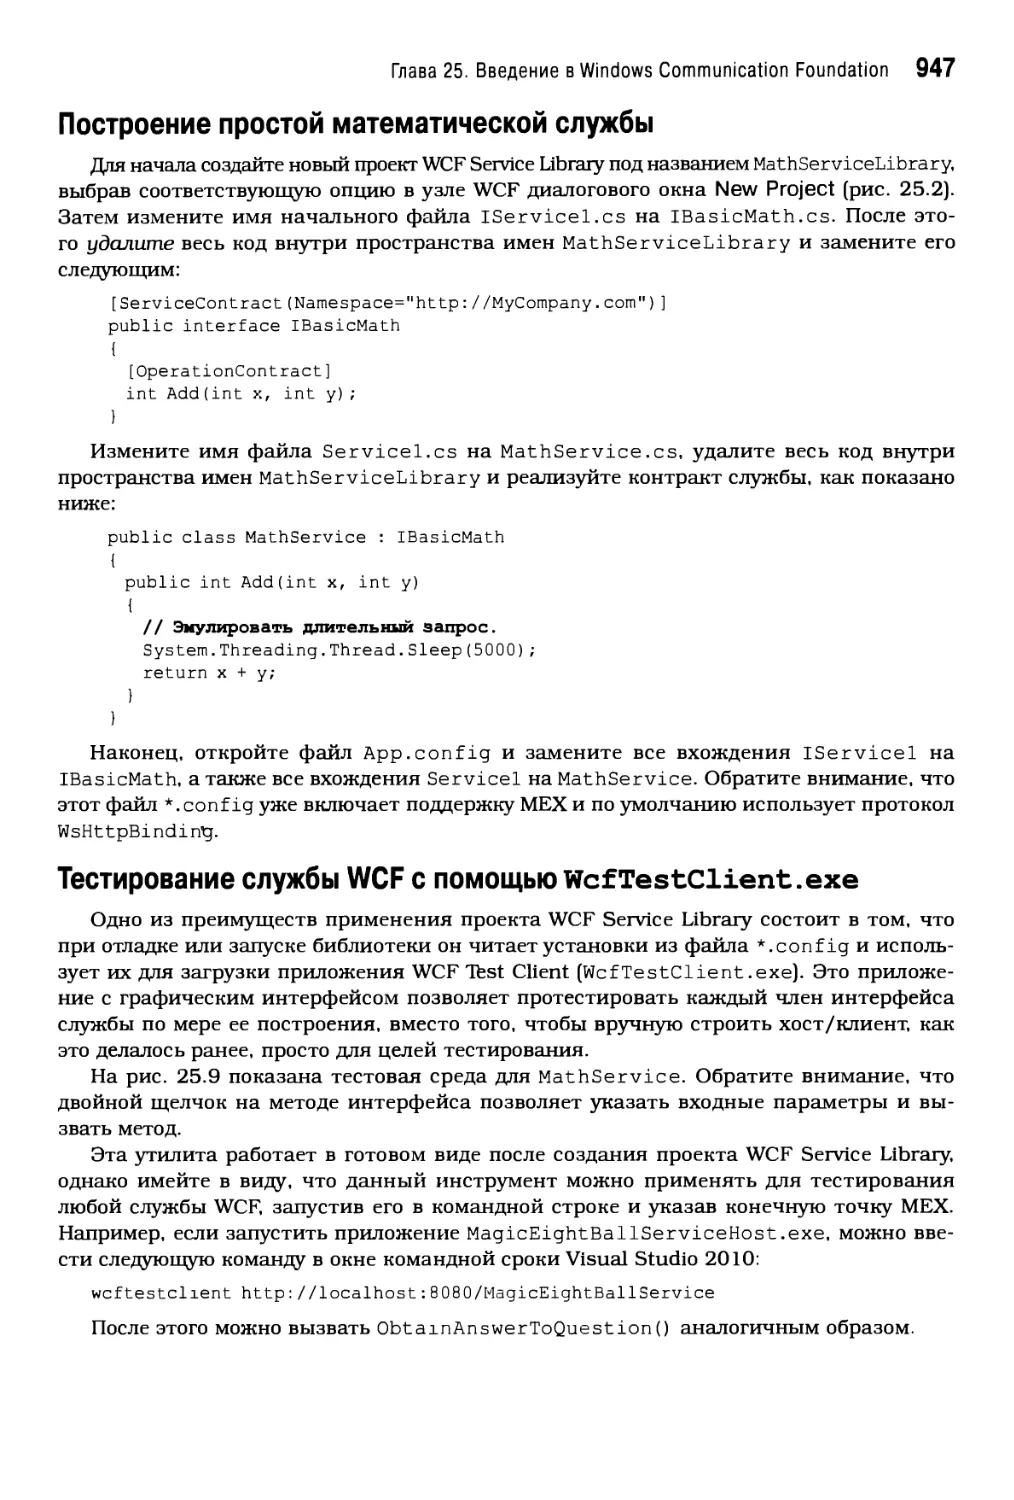 Тестирование службы WCFс помощью WcfTestClient.exe